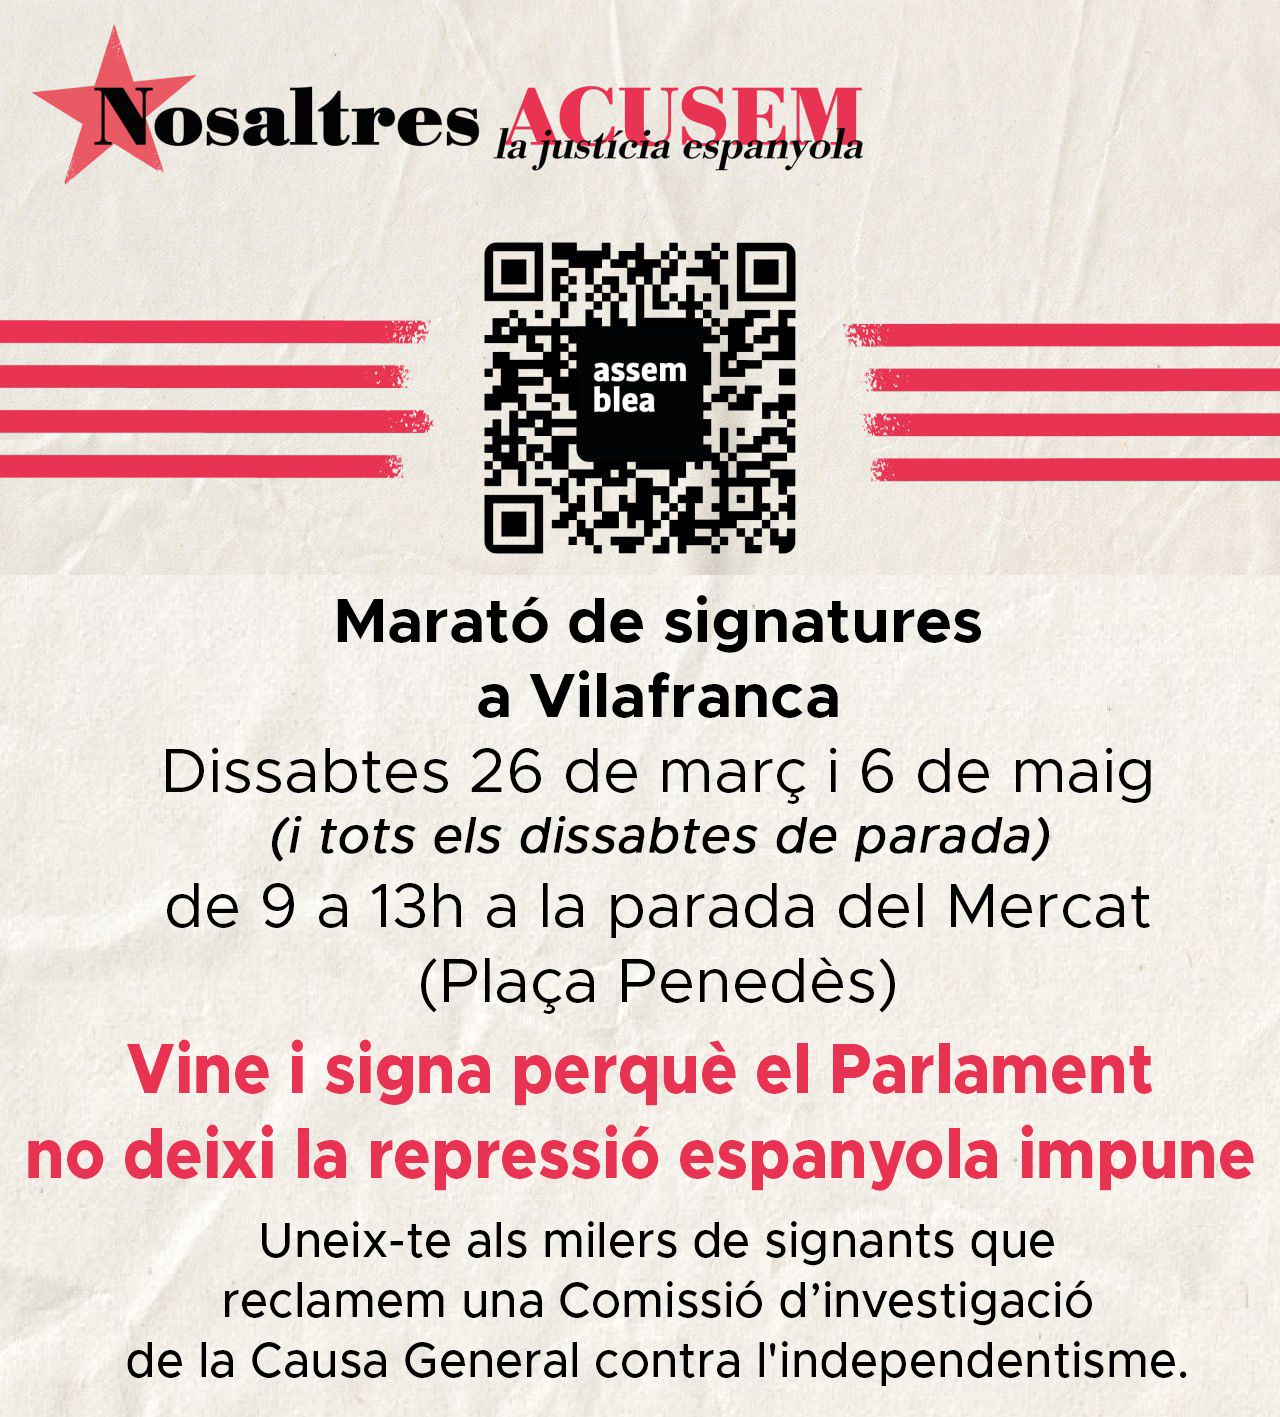 Vilafranca recull signatures perquè el Parlament no deixi la repressió impune